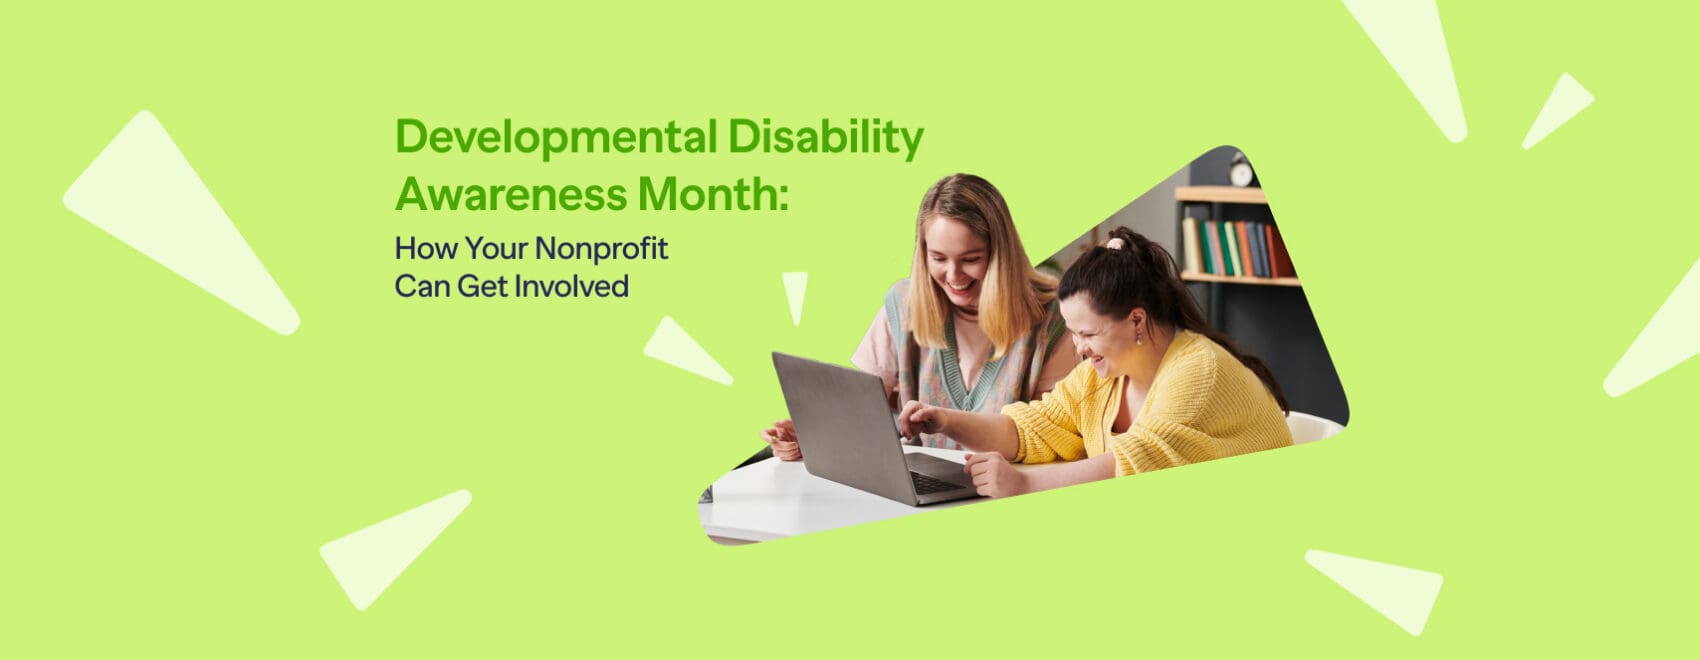 Developmental Disabilities Month